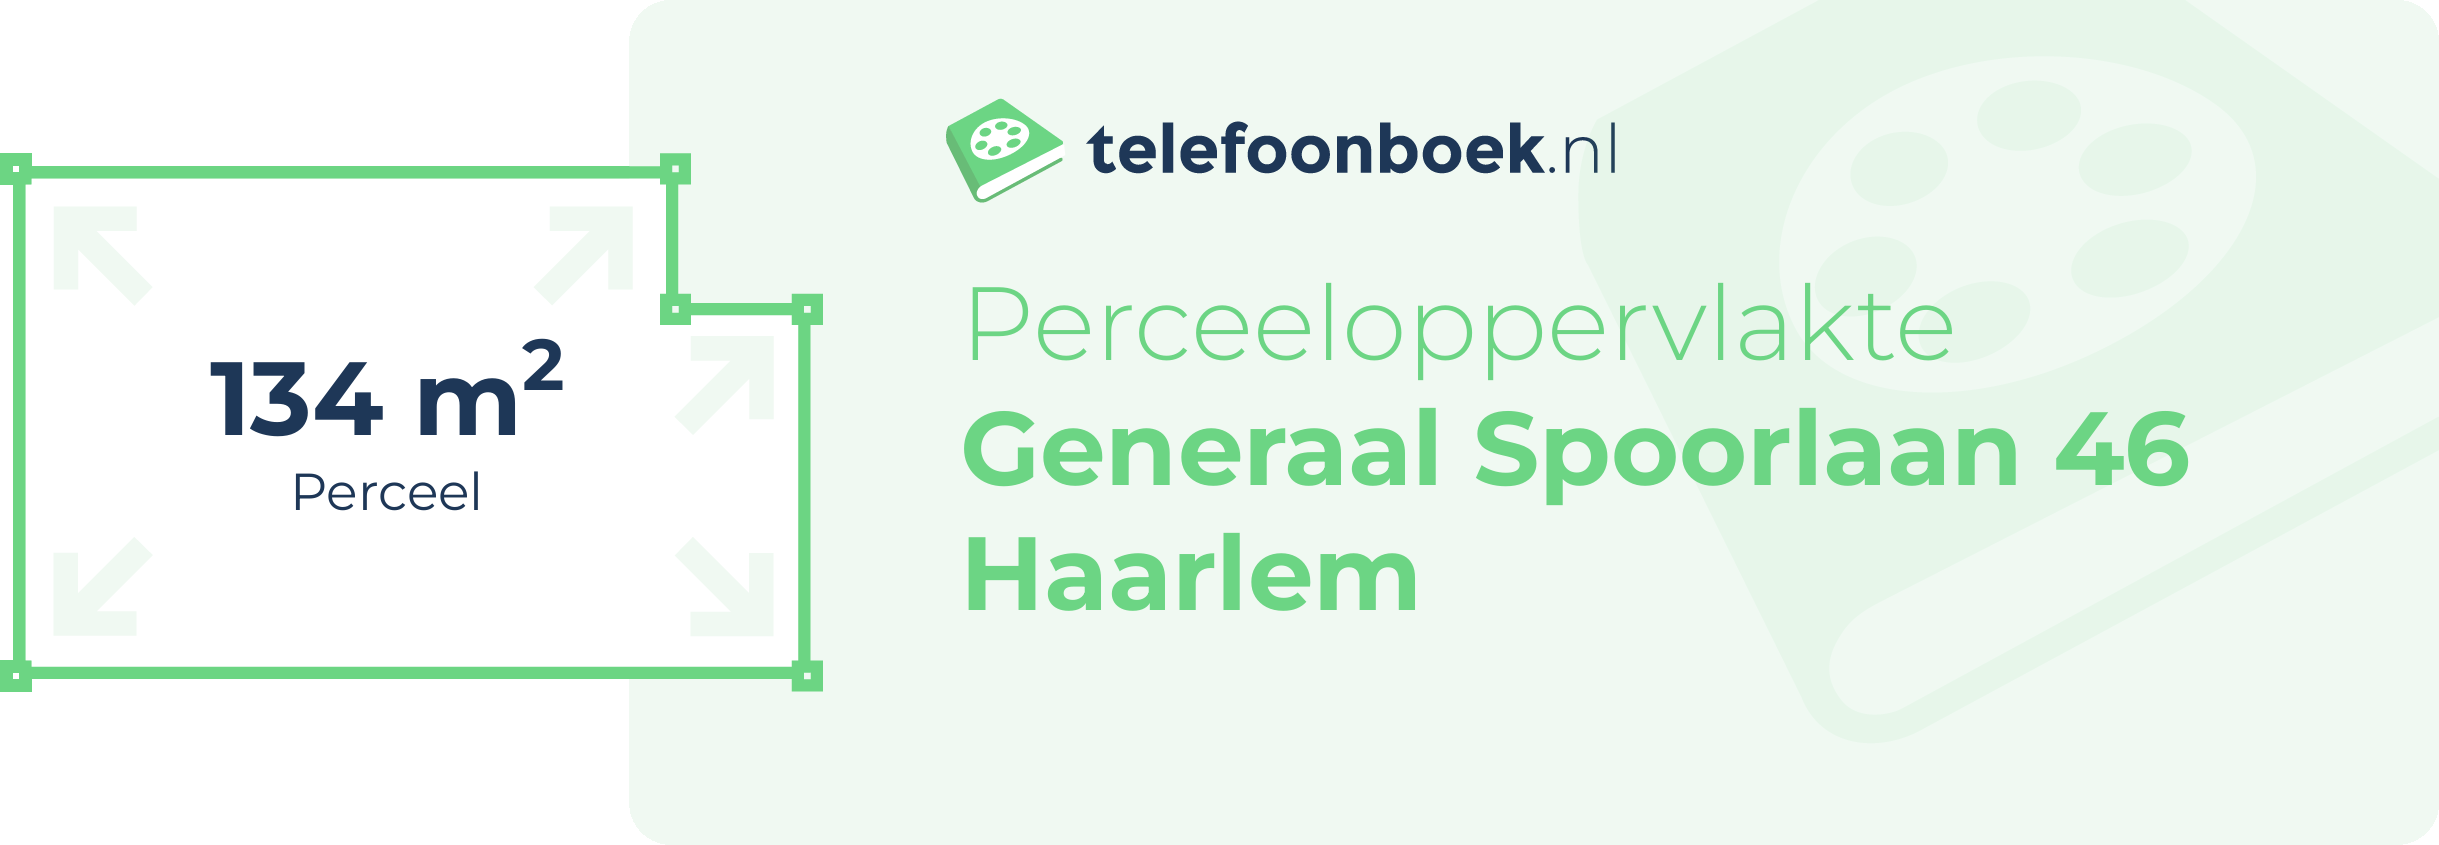 Perceeloppervlakte Generaal Spoorlaan 46 Haarlem